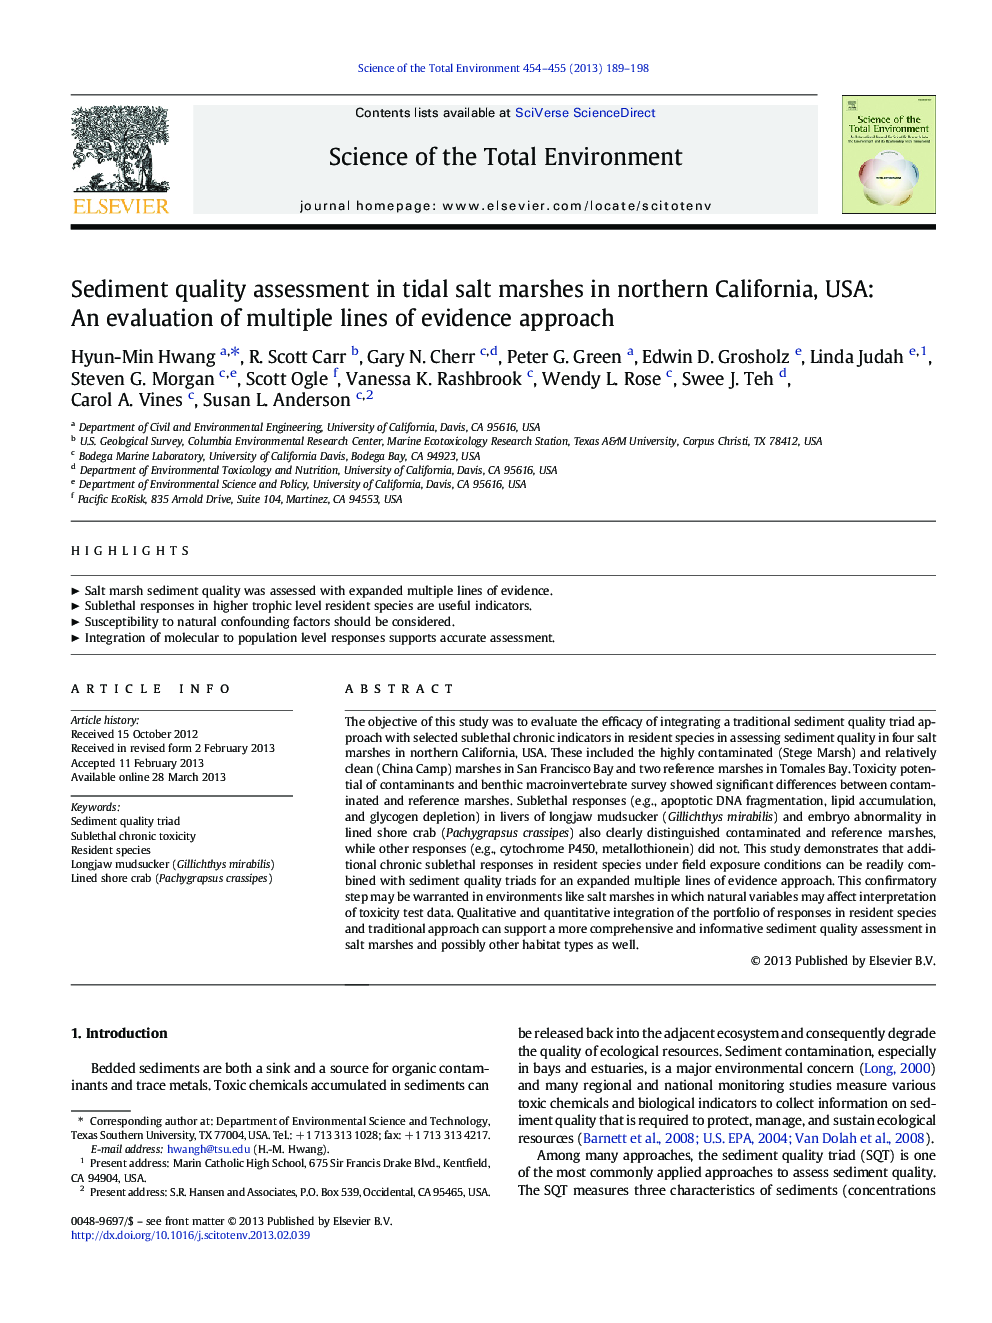 ارزیابی کیفیت رسوبات در نماتدهای نمکی جزر و مد در شمال کالیفرنیا، ایالات متحده آمریکا: ارزیابی خطوط چندگانه رویکرد شواهد 